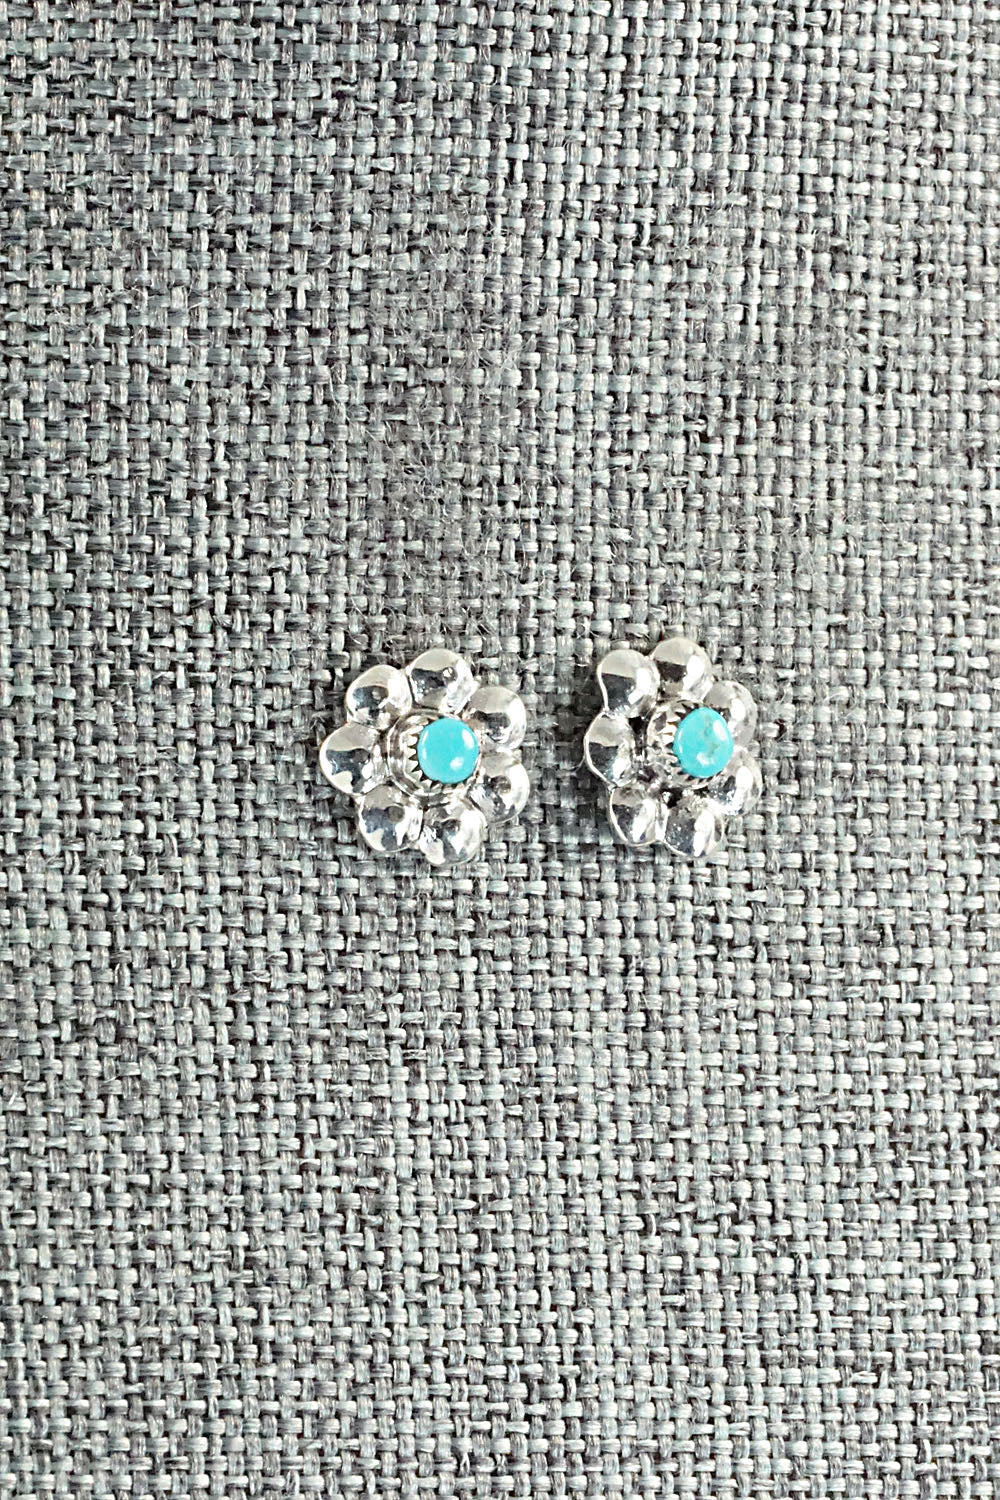 Turquoise & Sterling Silver Earrings - Ronald Yatsattie